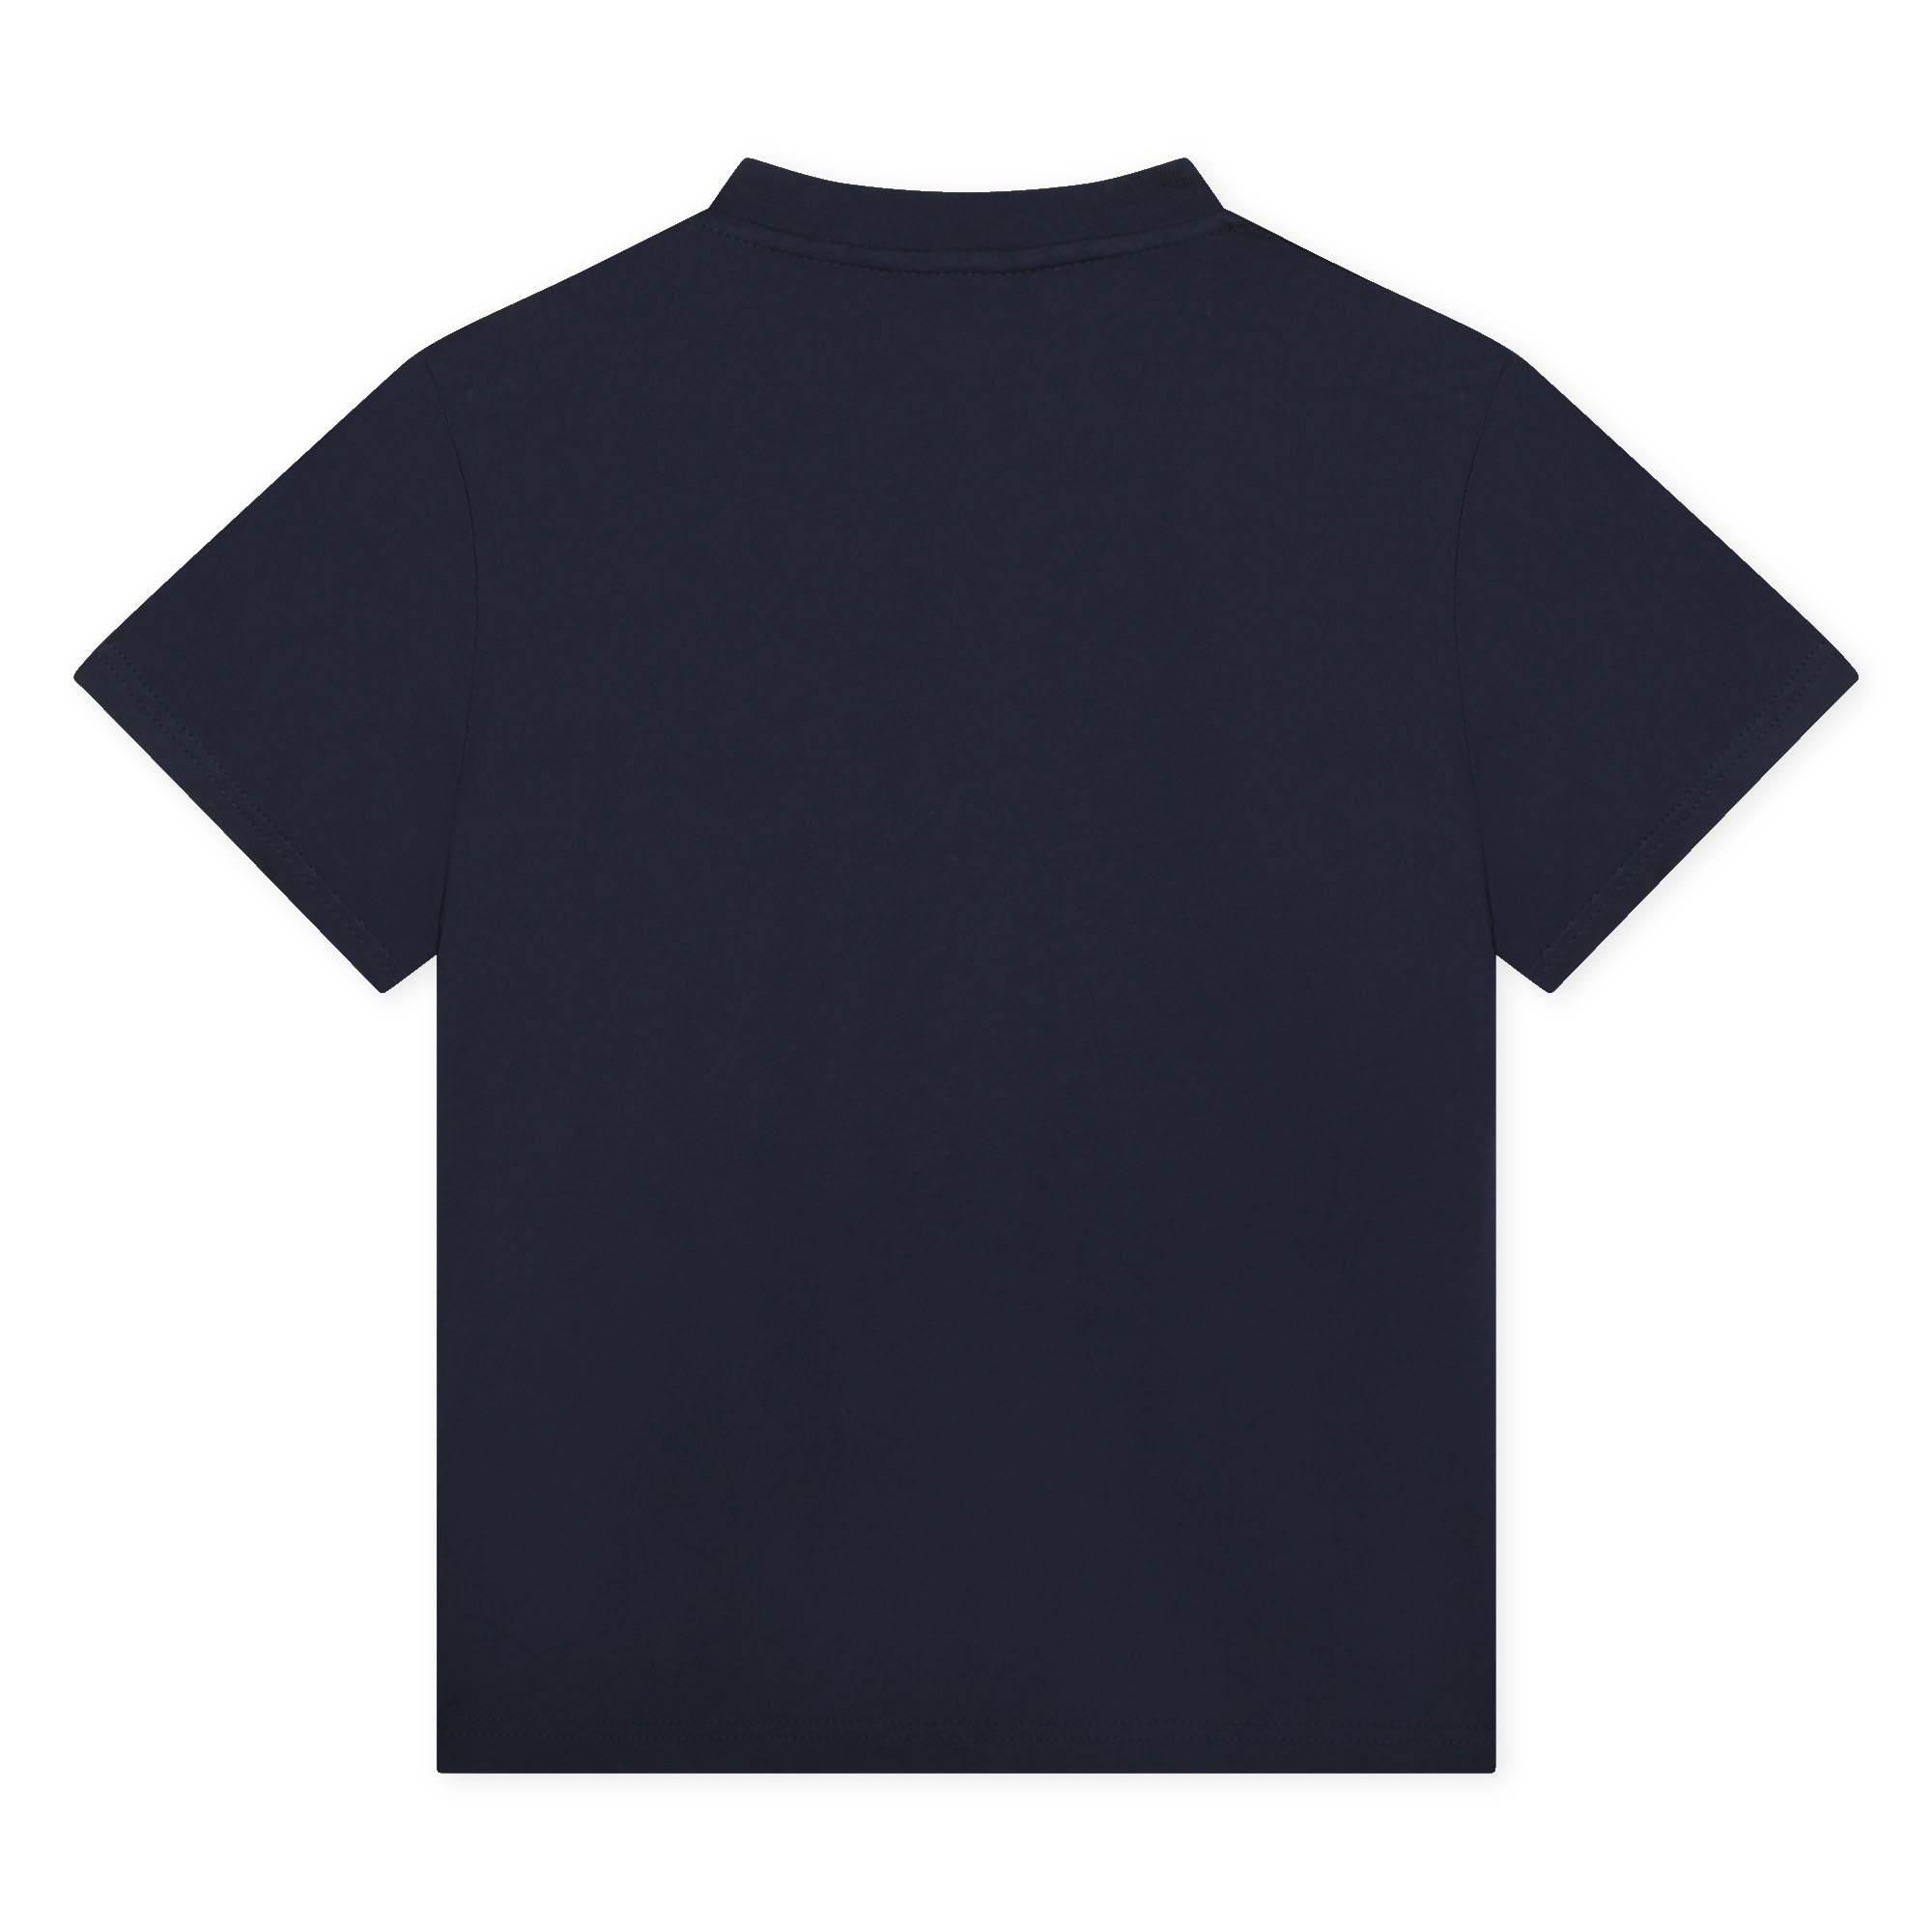 Camiseta de algodón LANVIN para NIÑO